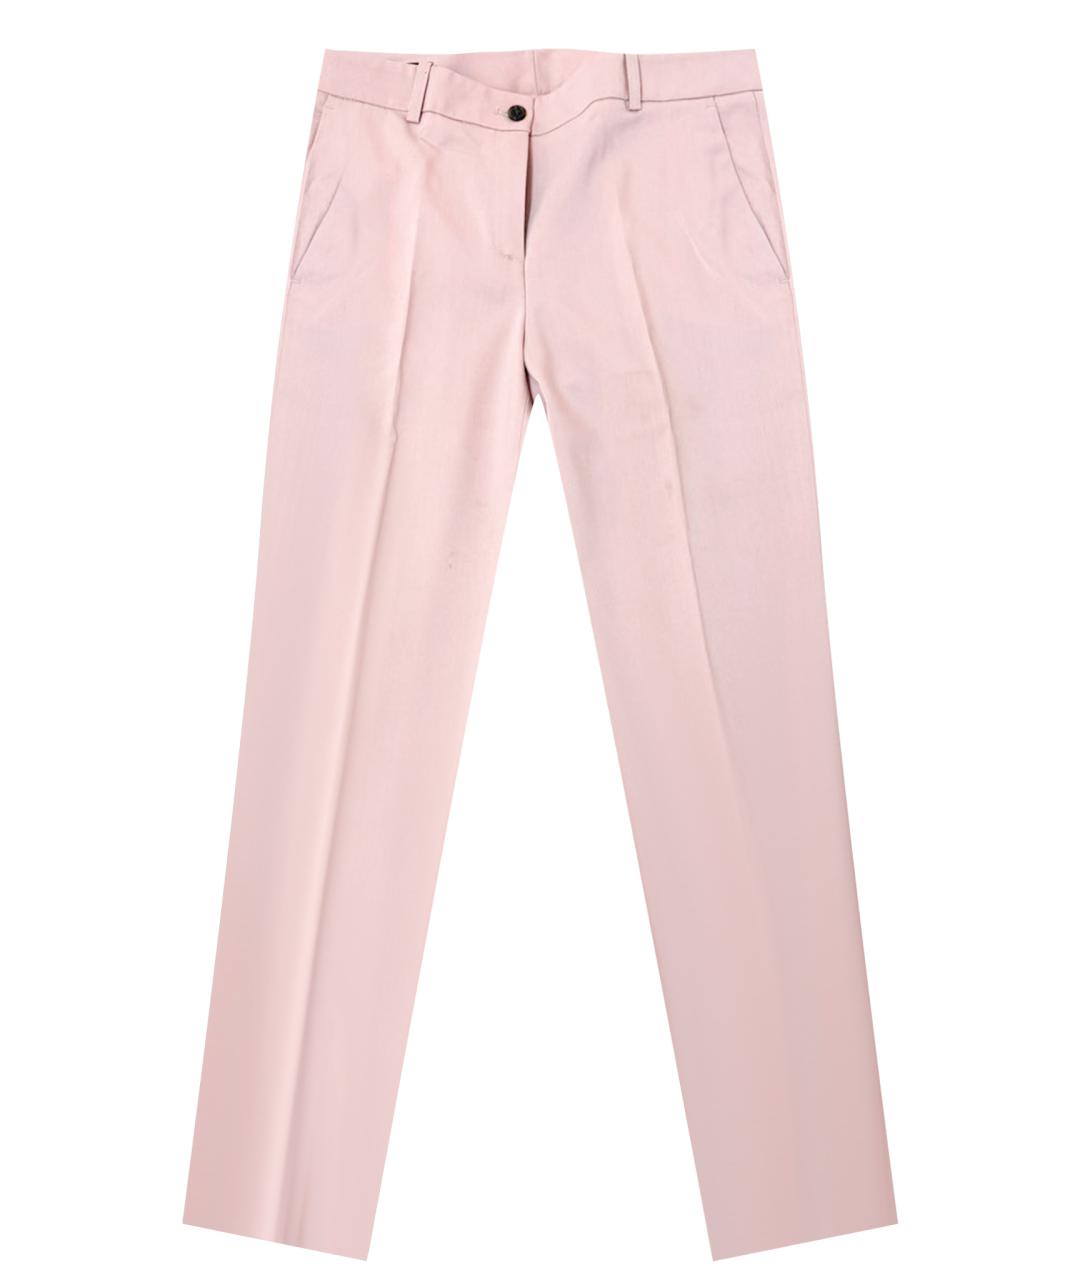 JIL SANDER NAVY Розовые шерстяные брюки узкие, фото 1